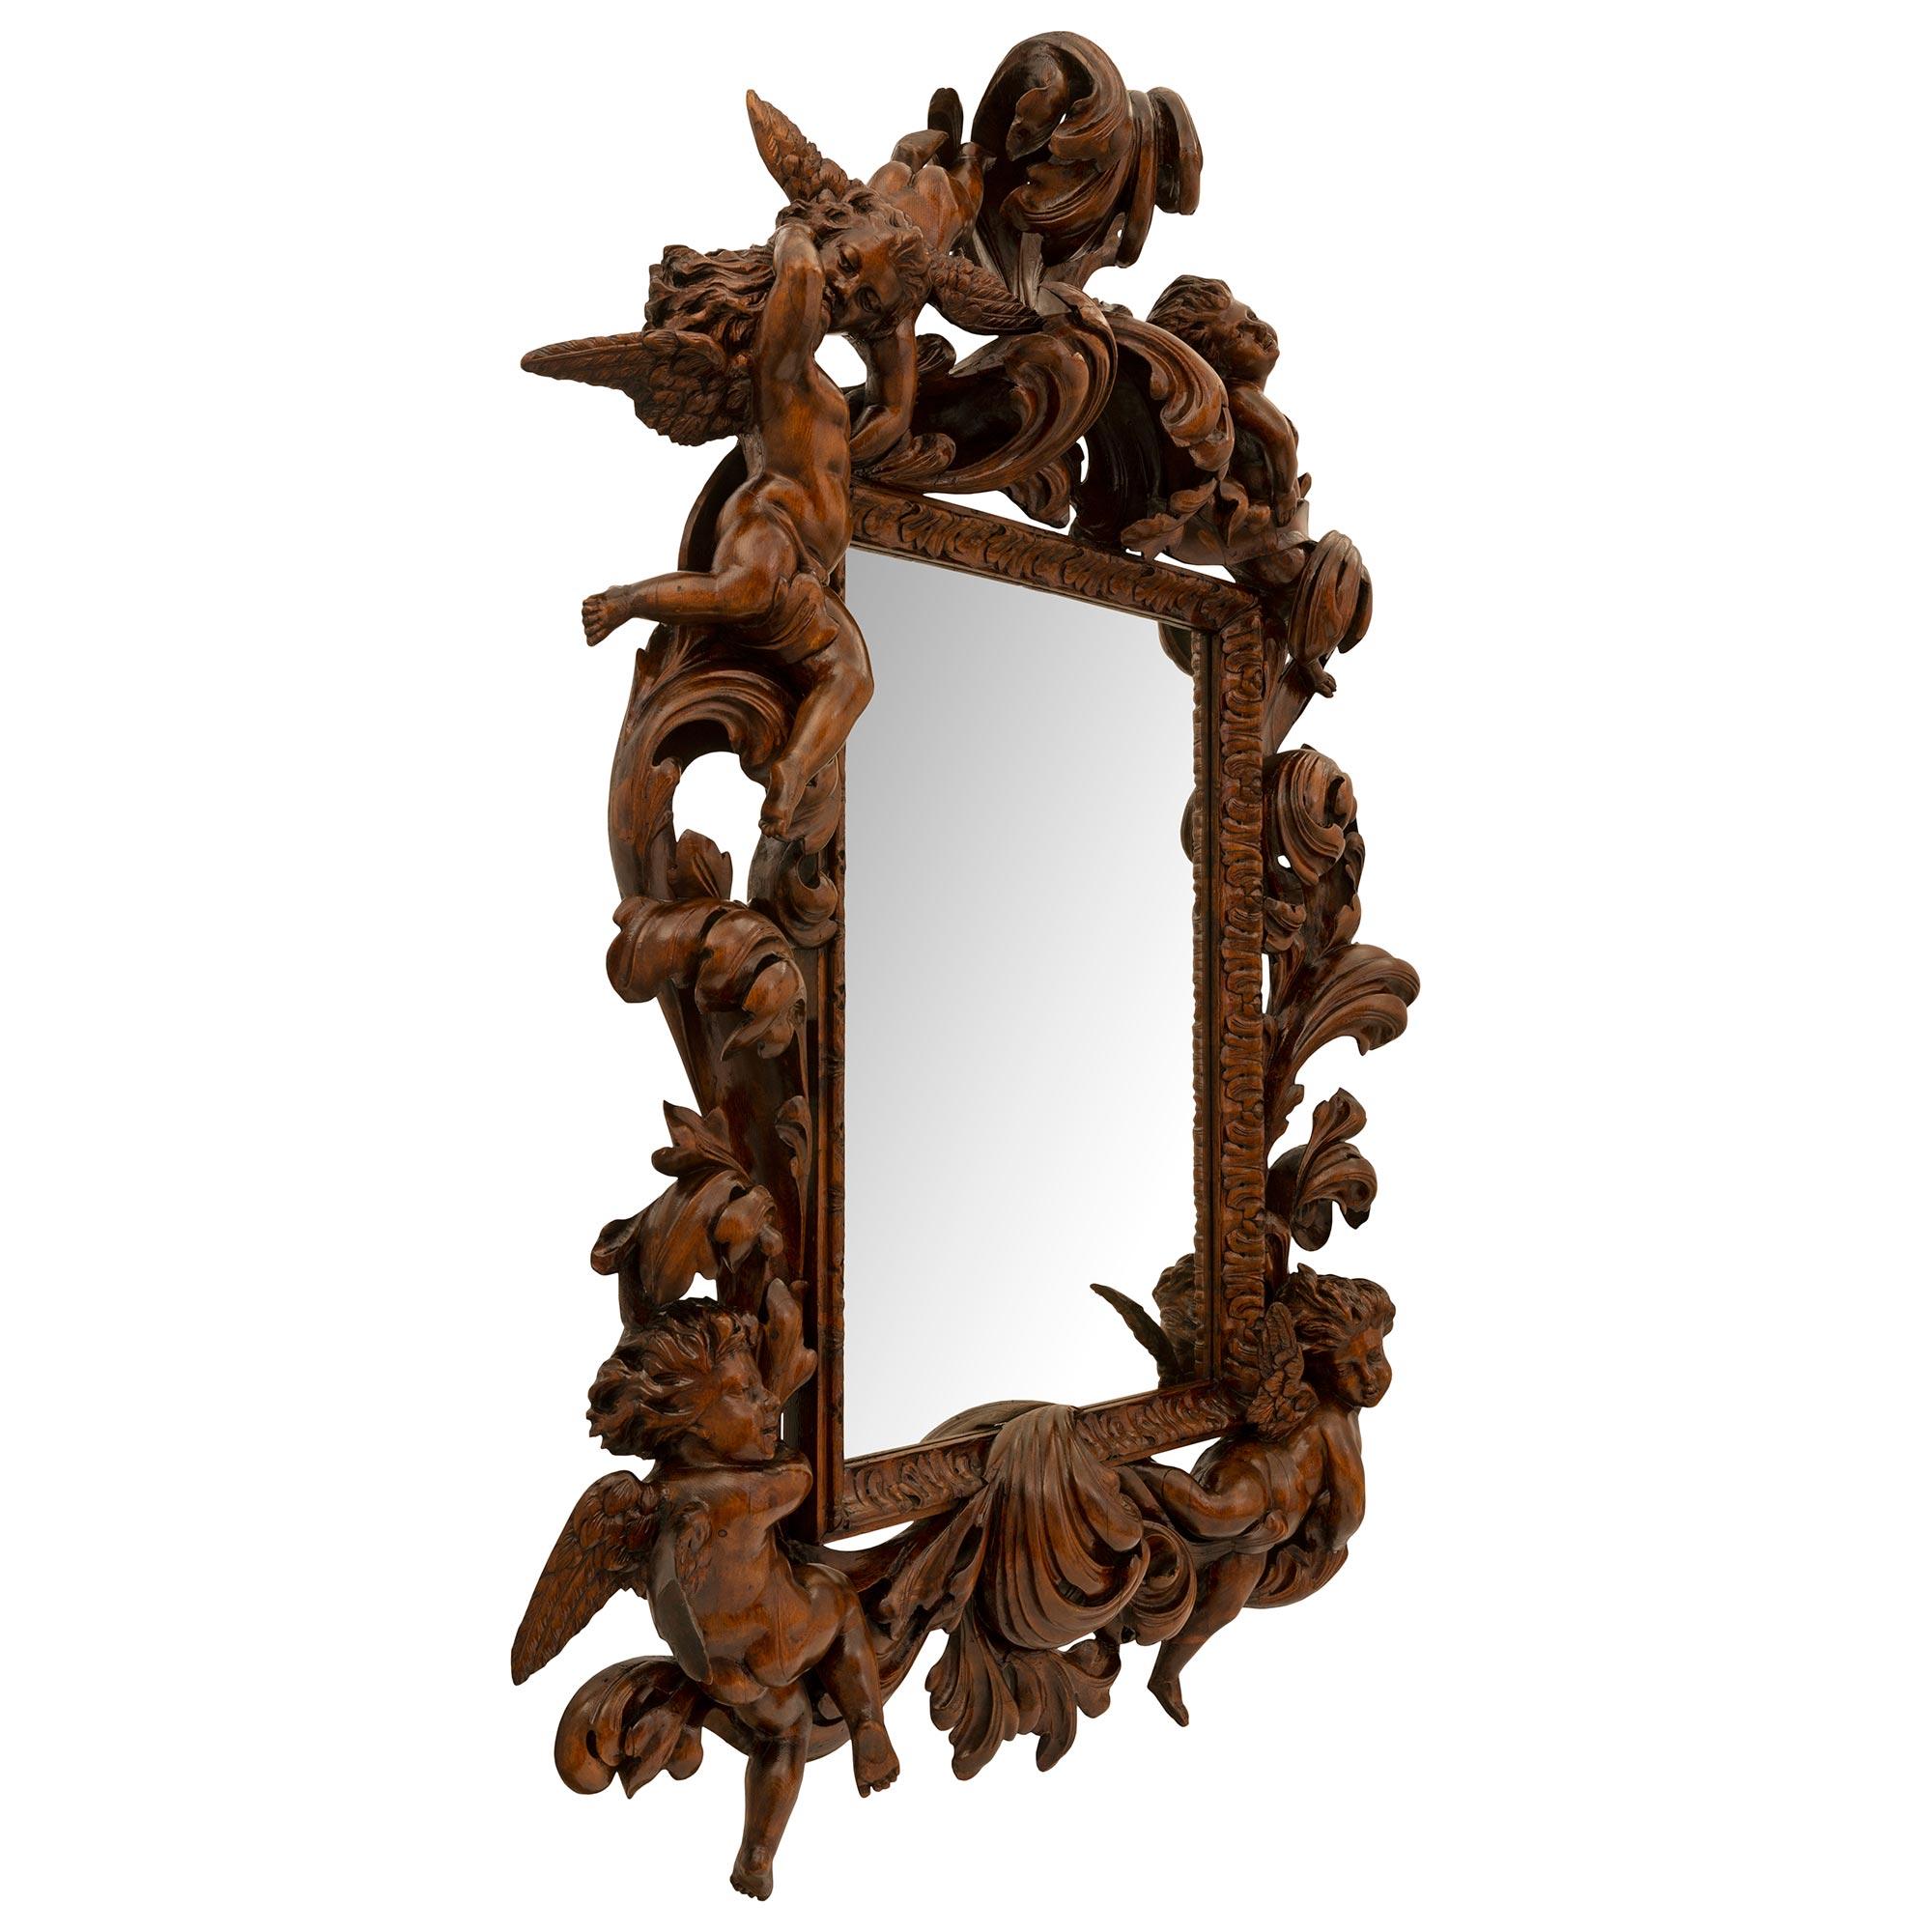 Ein atemberaubender und beeindruckender italienischer Barockspiegel aus Nussbaum des 19. Der Spiegel behält seine ursprüngliche Spiegelplatte, die von einem eleganten, gesprenkelten Blattrand umrahmt ist. Außergewöhnliche und sehr dekorative